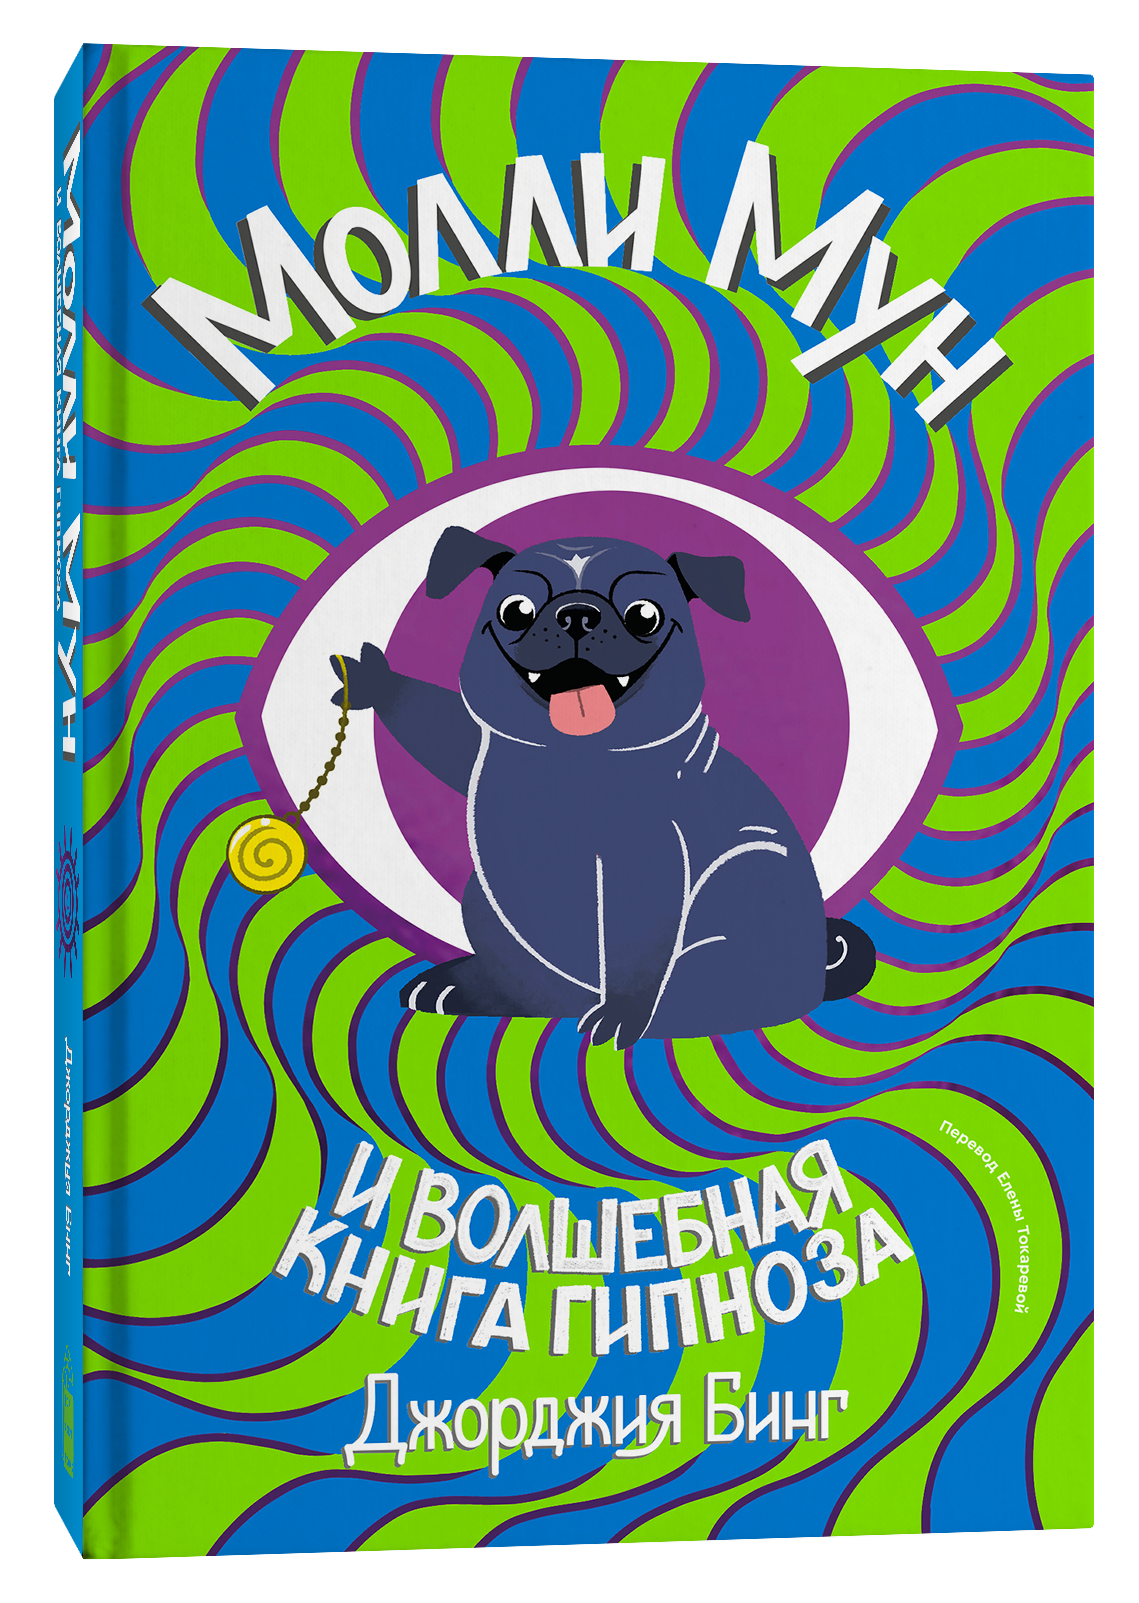 Молли мун и книга гипноза. Джорджия бинг Молли Мун. Молли Мун и Волшебная книга гипноза (2015).